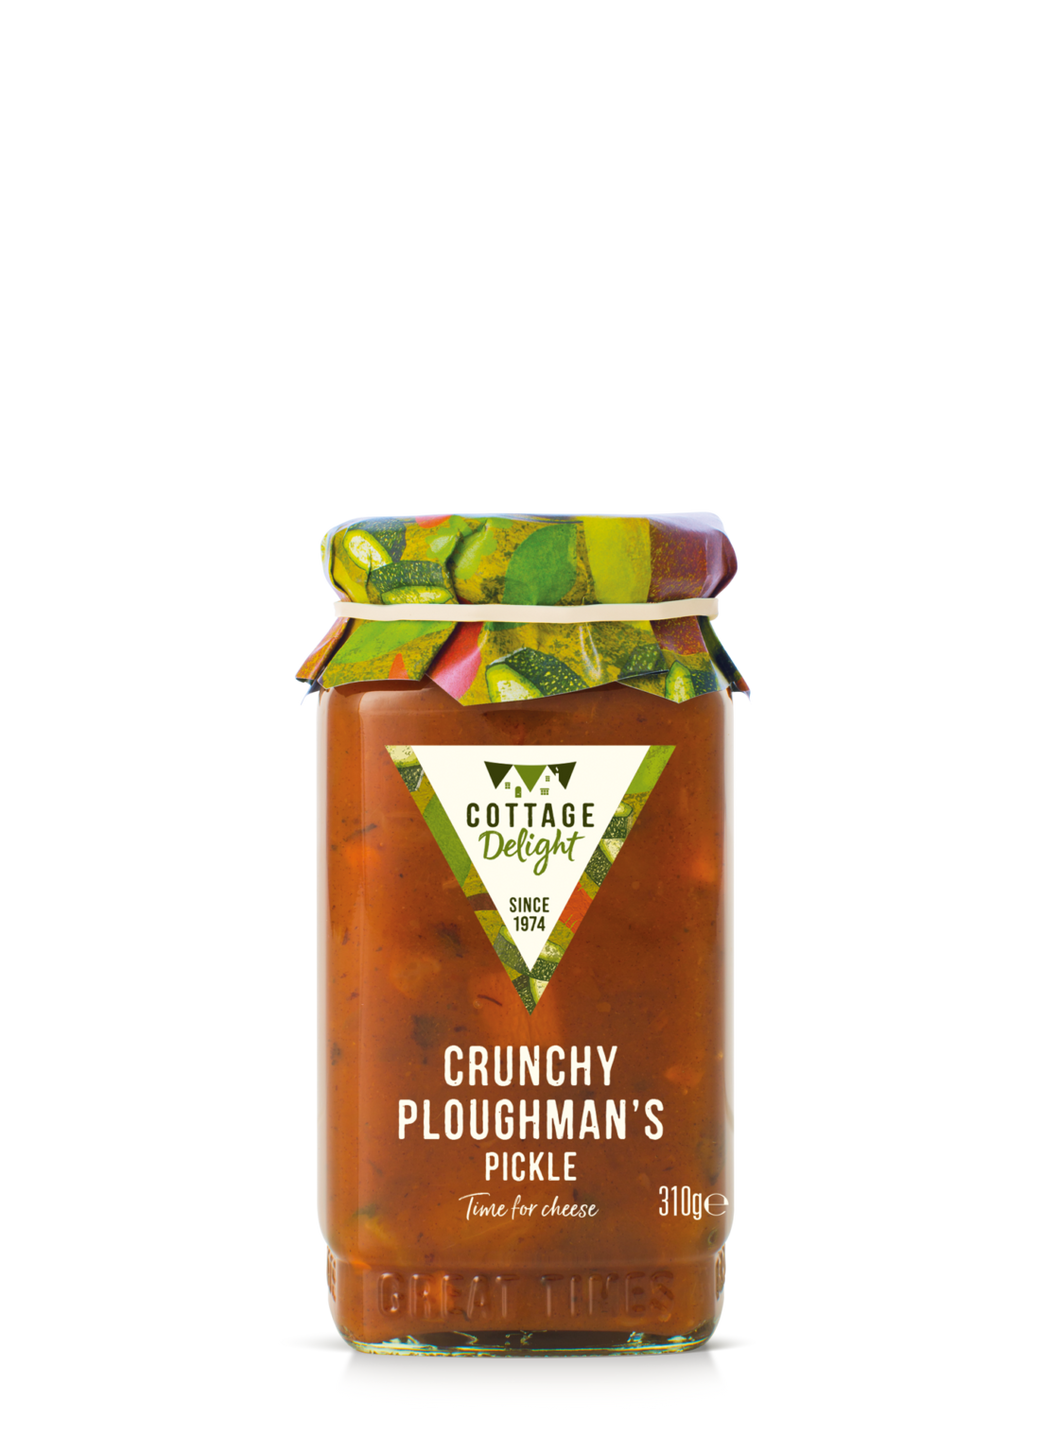 Crunchy ploughman’s pickle